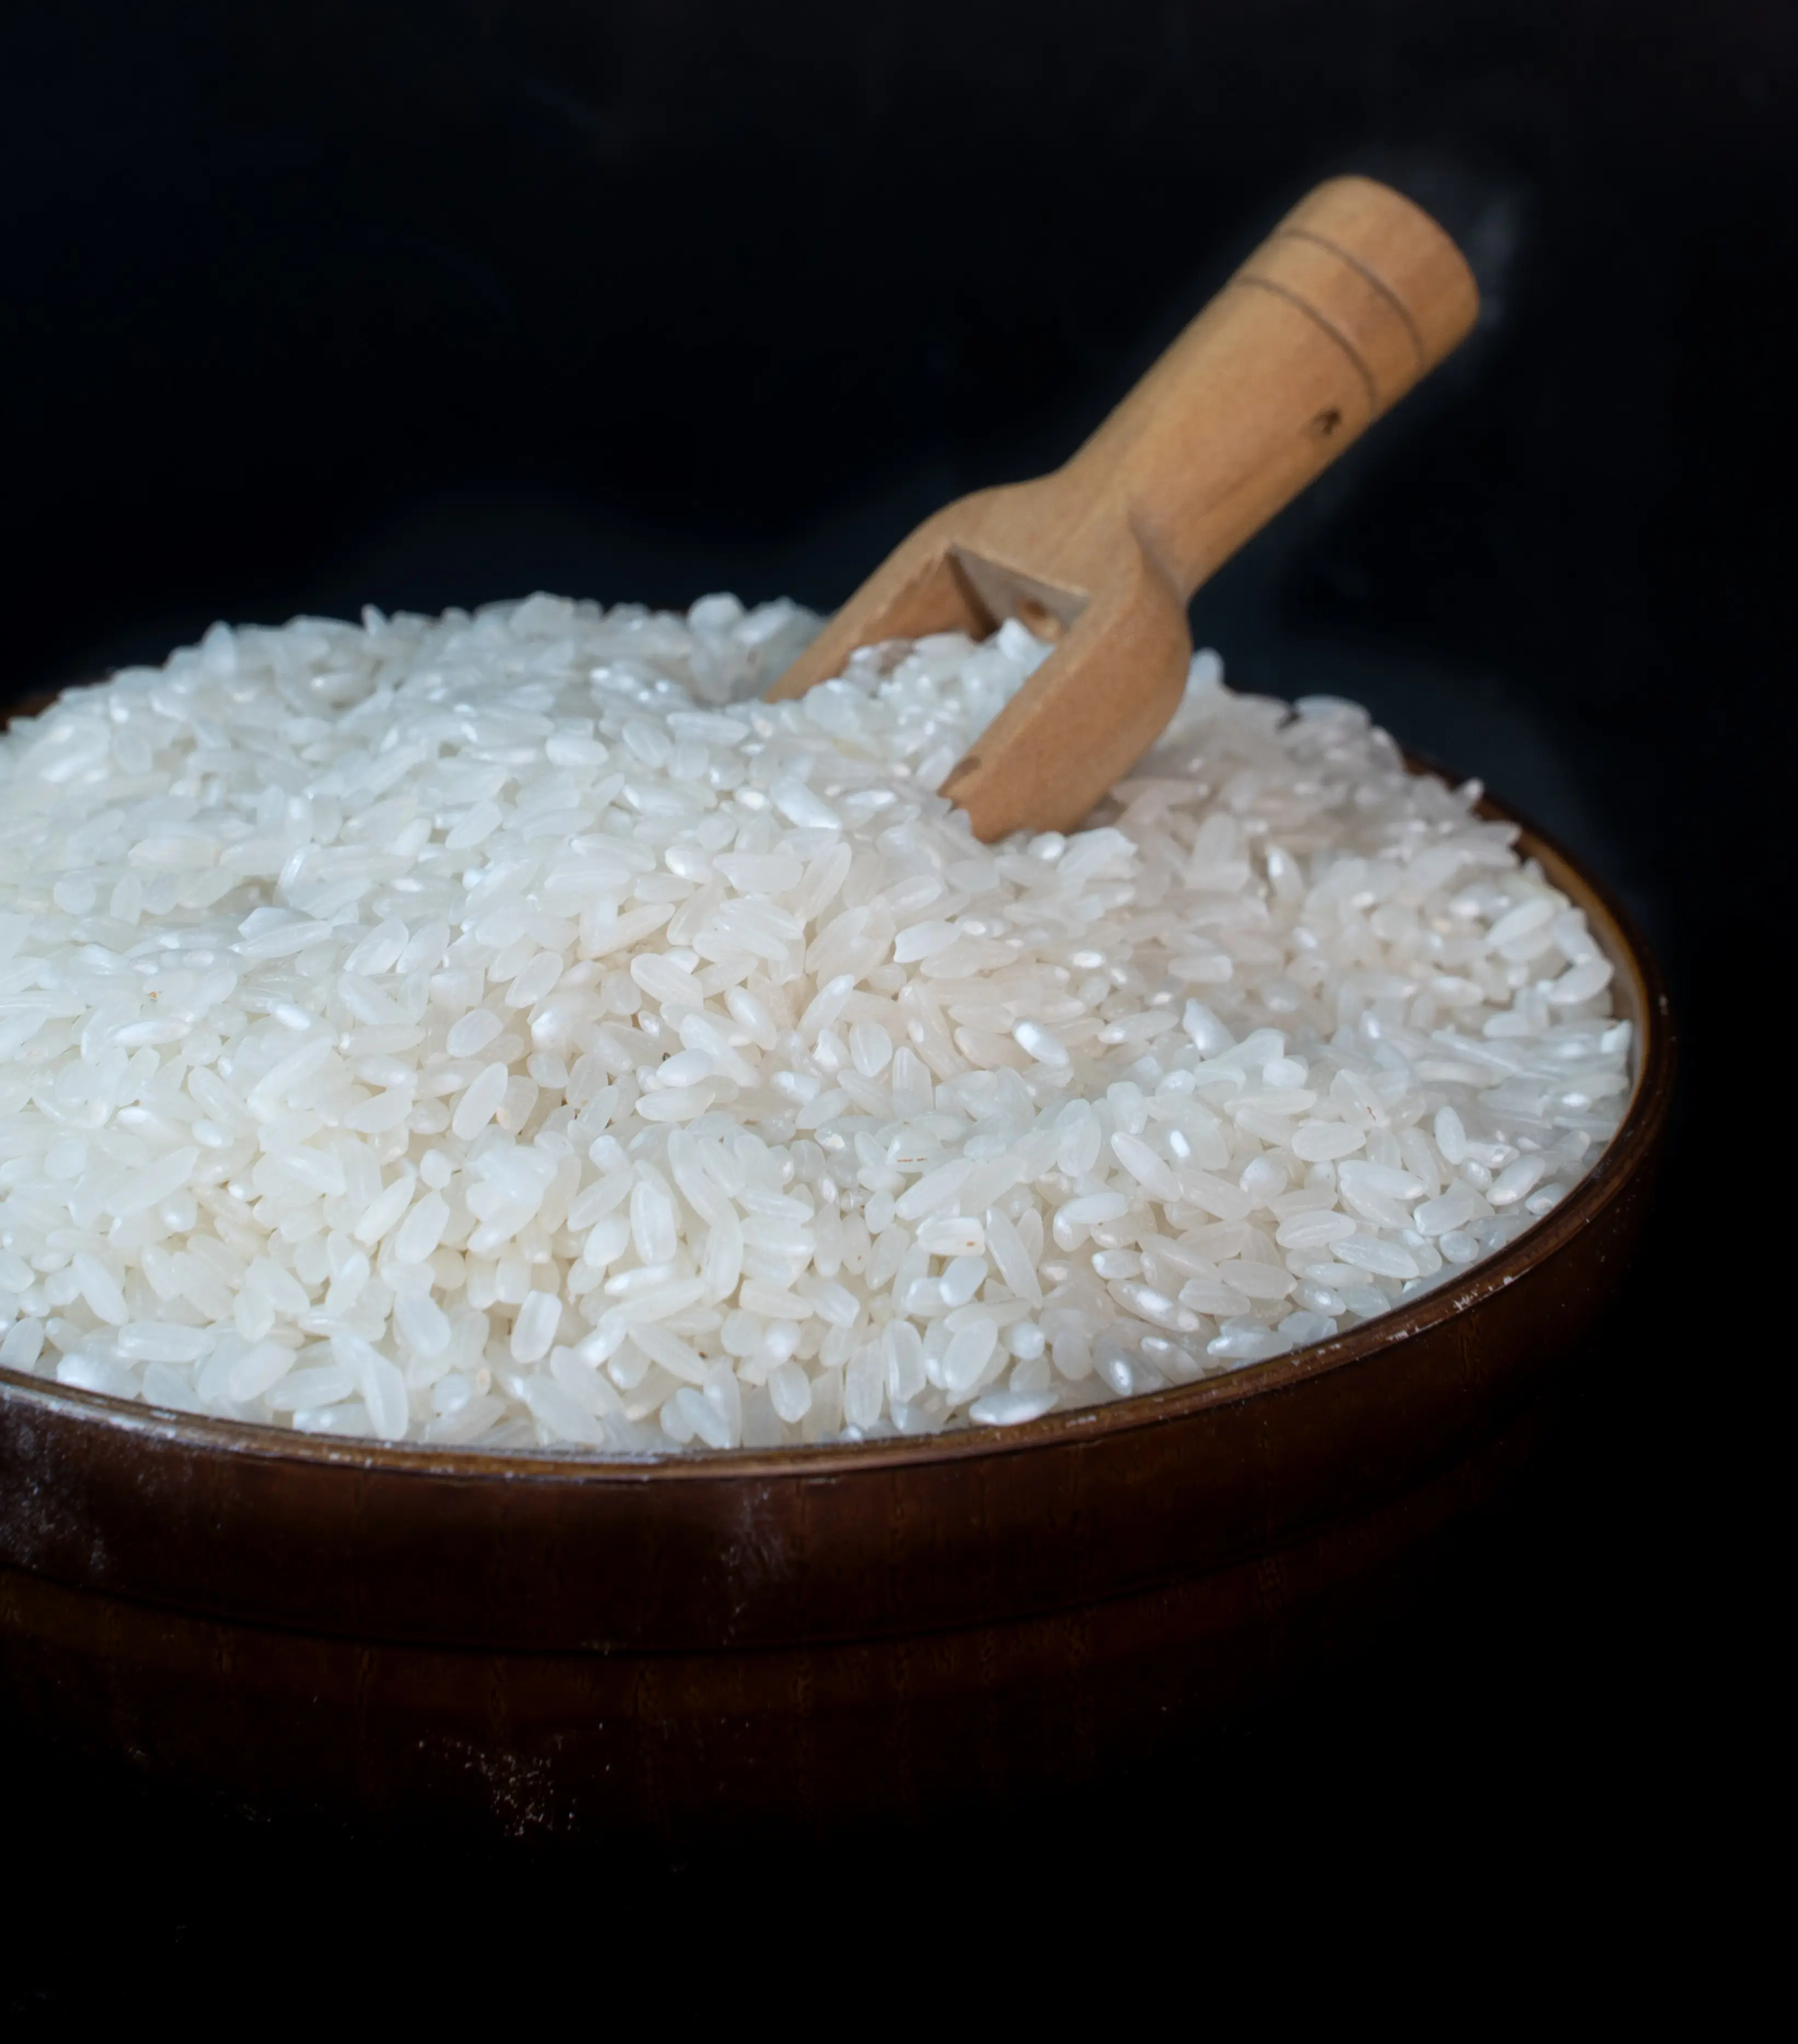 אורז קצר איכותי - גרגר בינוני, 100% סורטקס משיי טהור נקי מווייטנאם, אורז וייטנאמי - חם חם חם